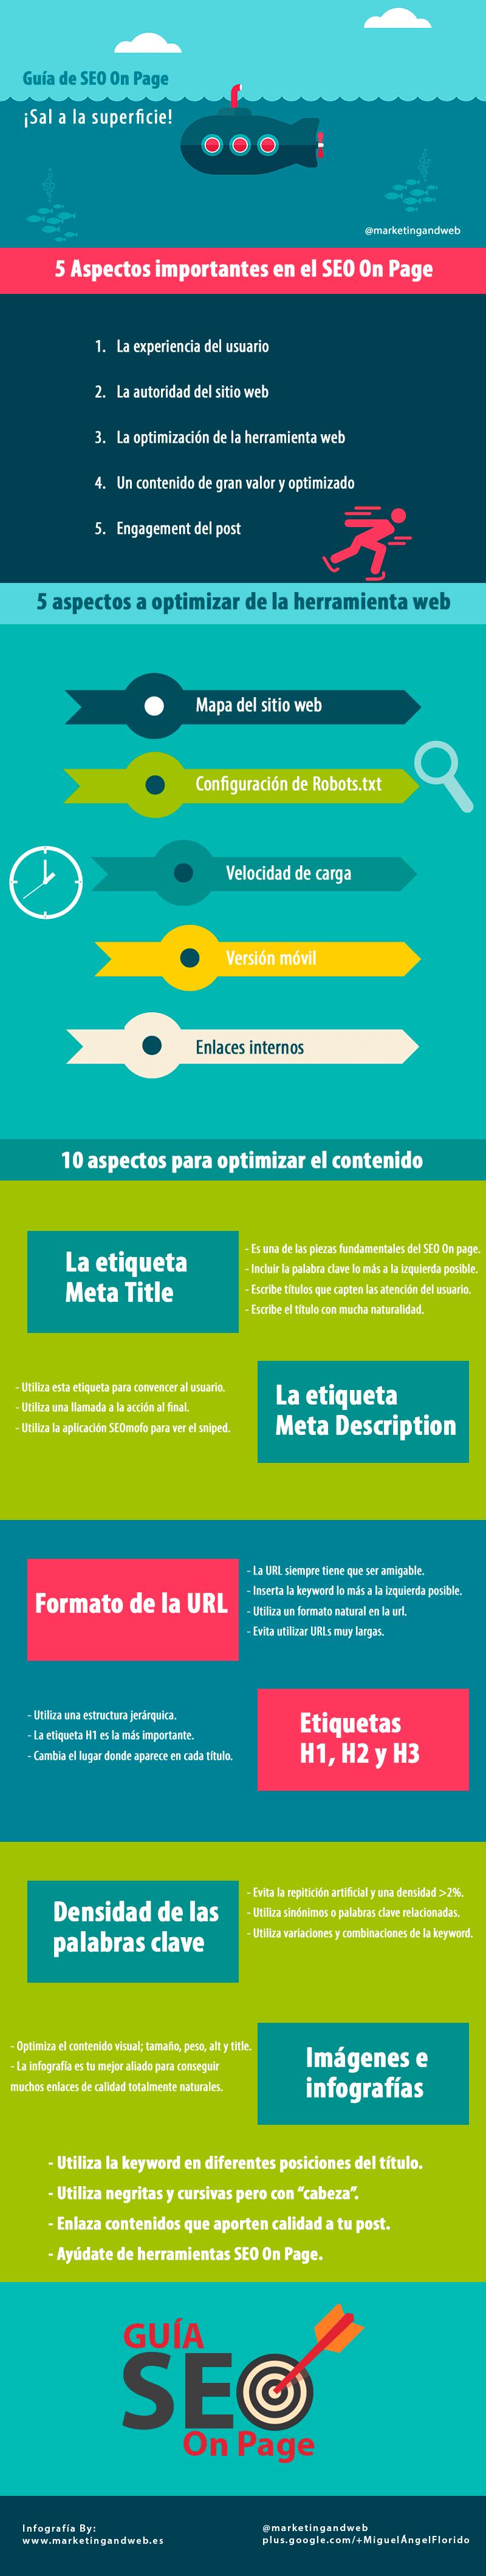 Completa guía de SEO on-page en español (infografía)